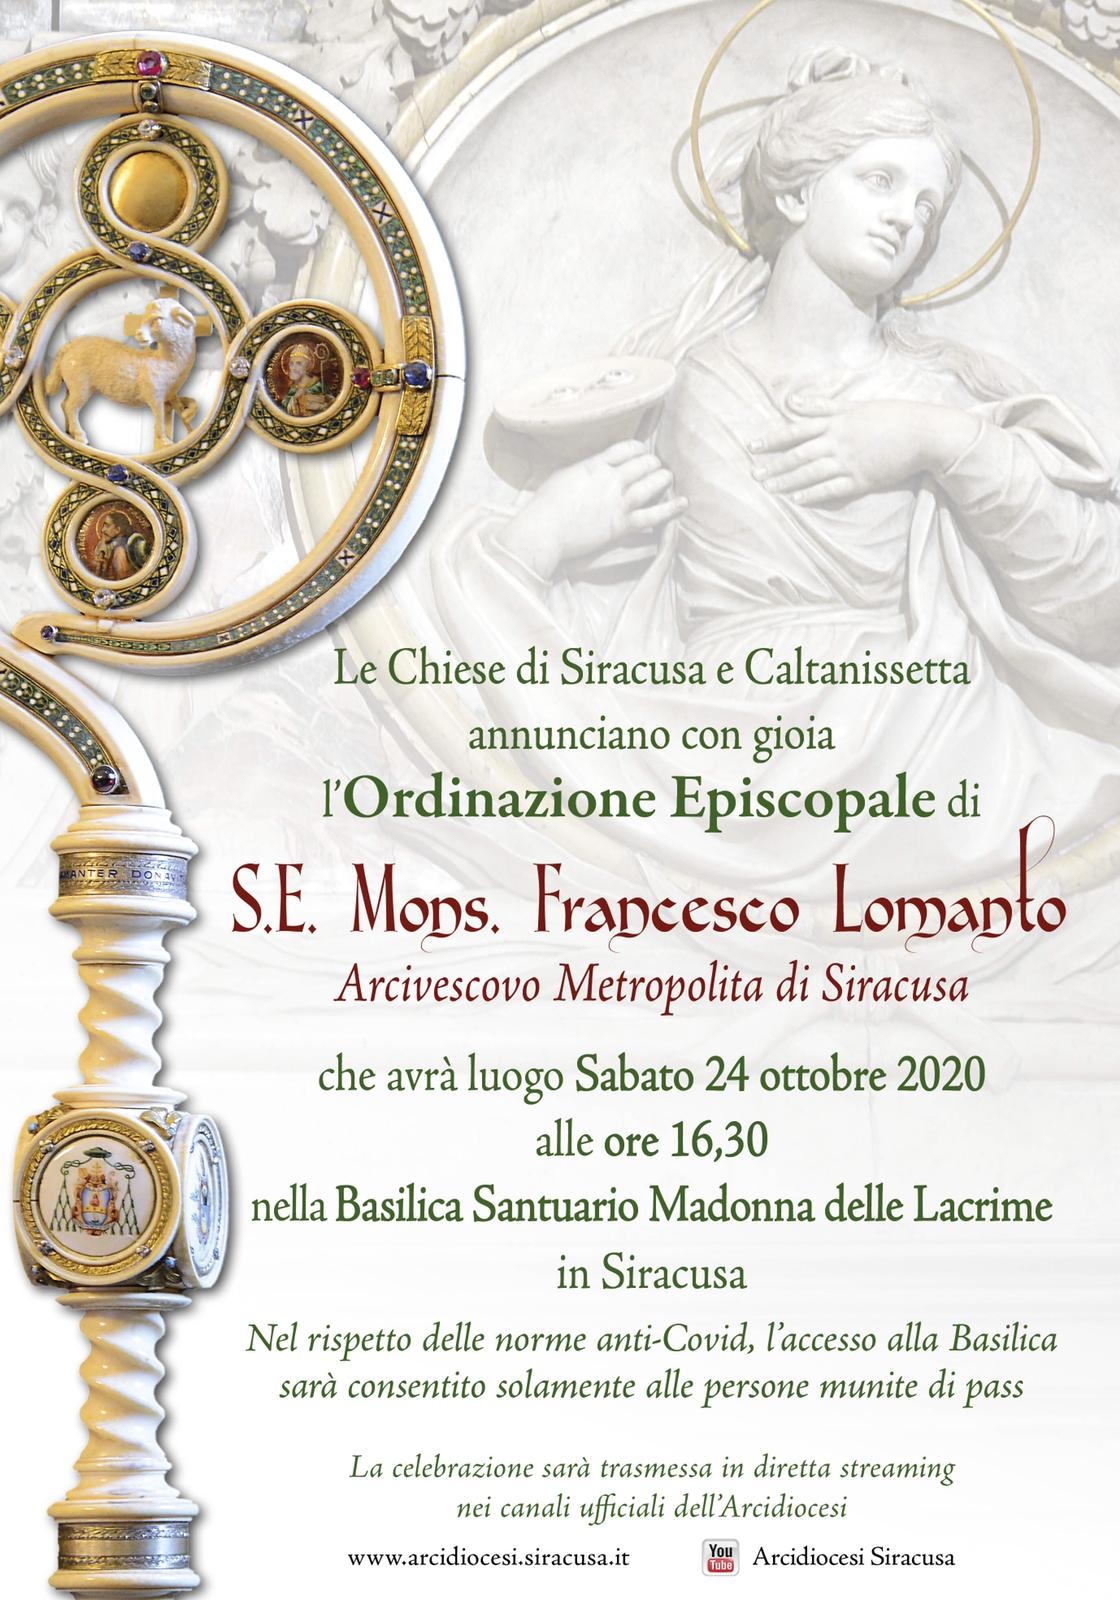 Le Chiese di Siracusa e Caltanissetta annunciano l’Ordinazione Episcopale di mons. Francesco Lomanto